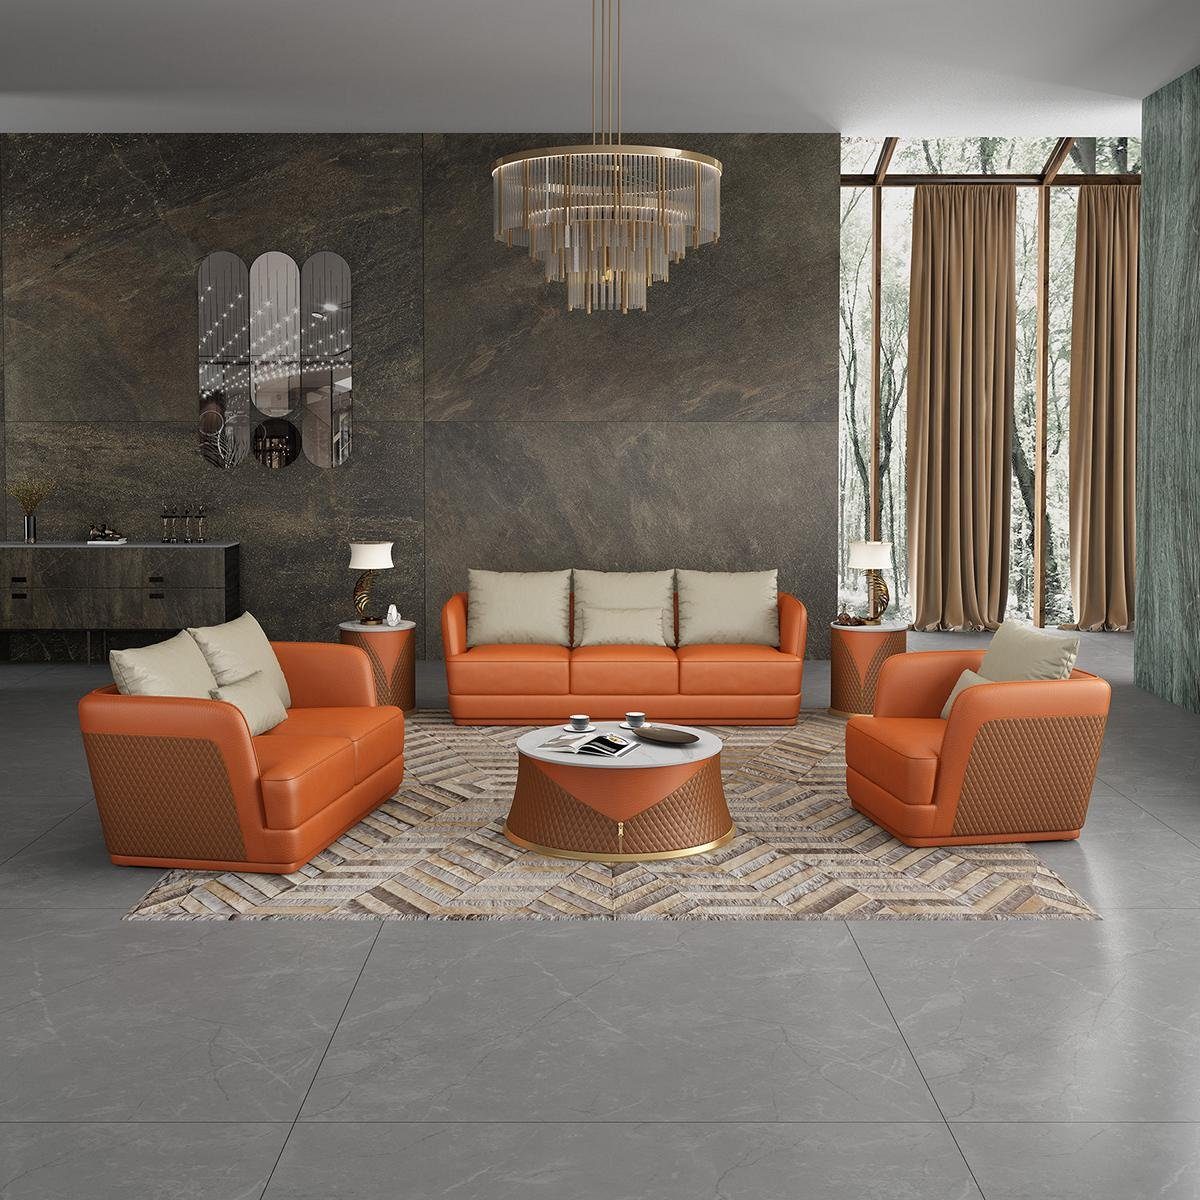 JVmoebel Wohnzimmer-Set, Ledersofa Couch Wohnlandschaft 3 2 1 Sitzer Garnitur Design Modern Orange | Wohnwände